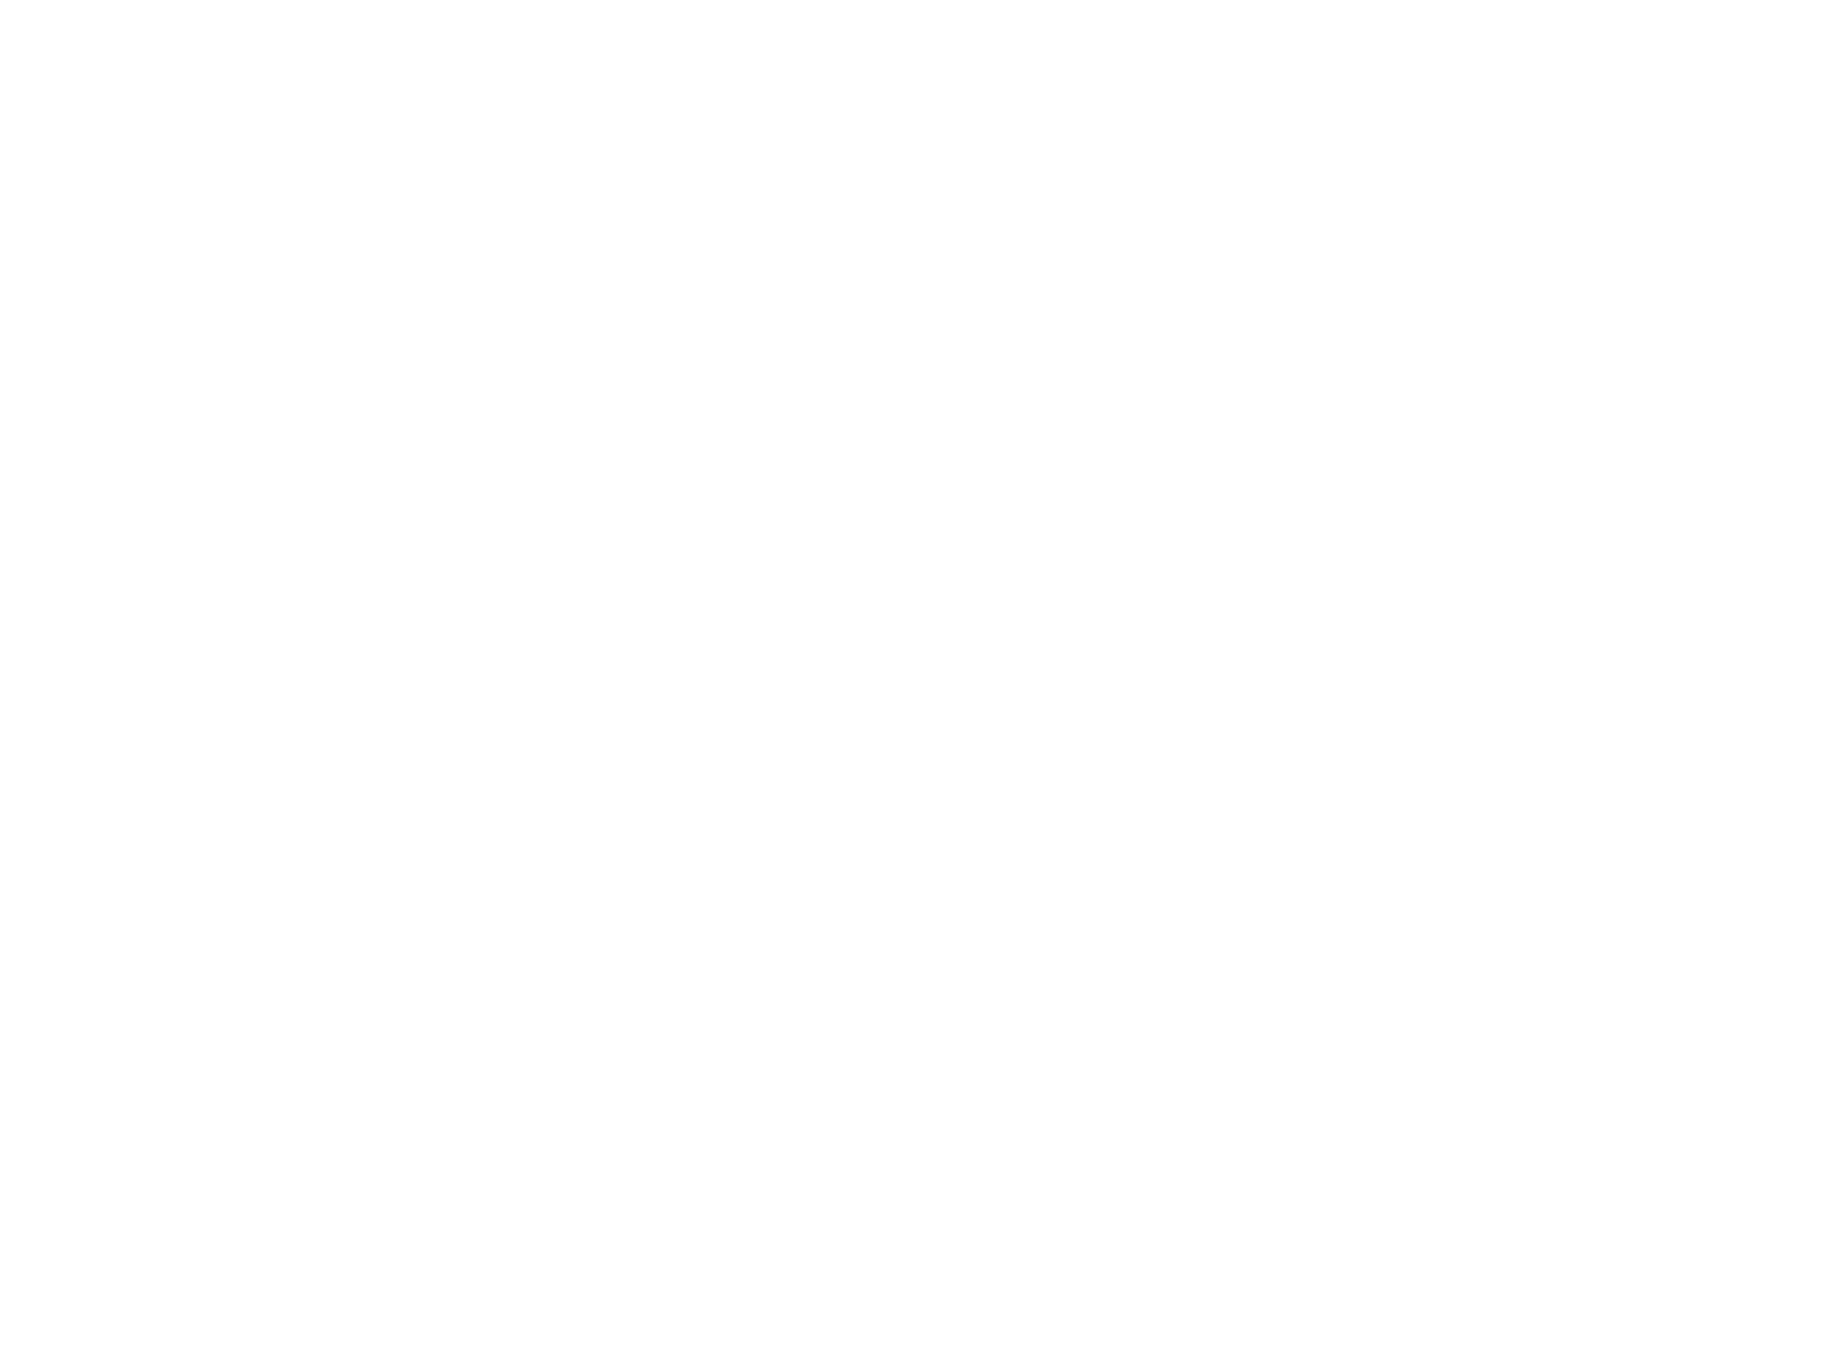 WSJ Enterprises